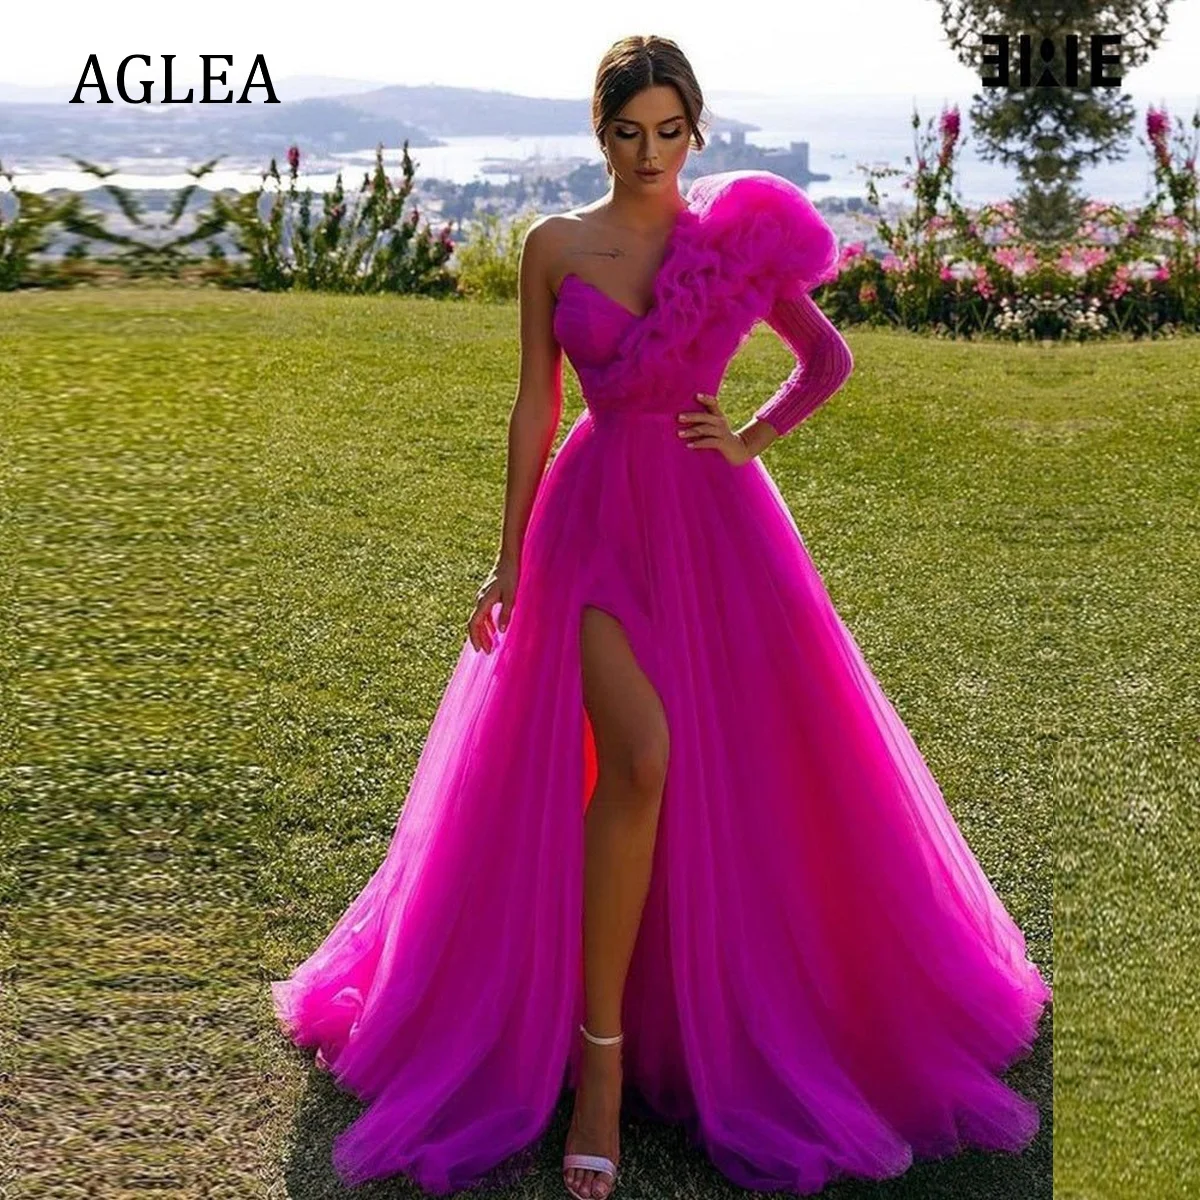 

Женское вечернее платье AGLEA, элегантное строгое платье с одним открытым плечом, трапециевидной формы, для выпускного вечера